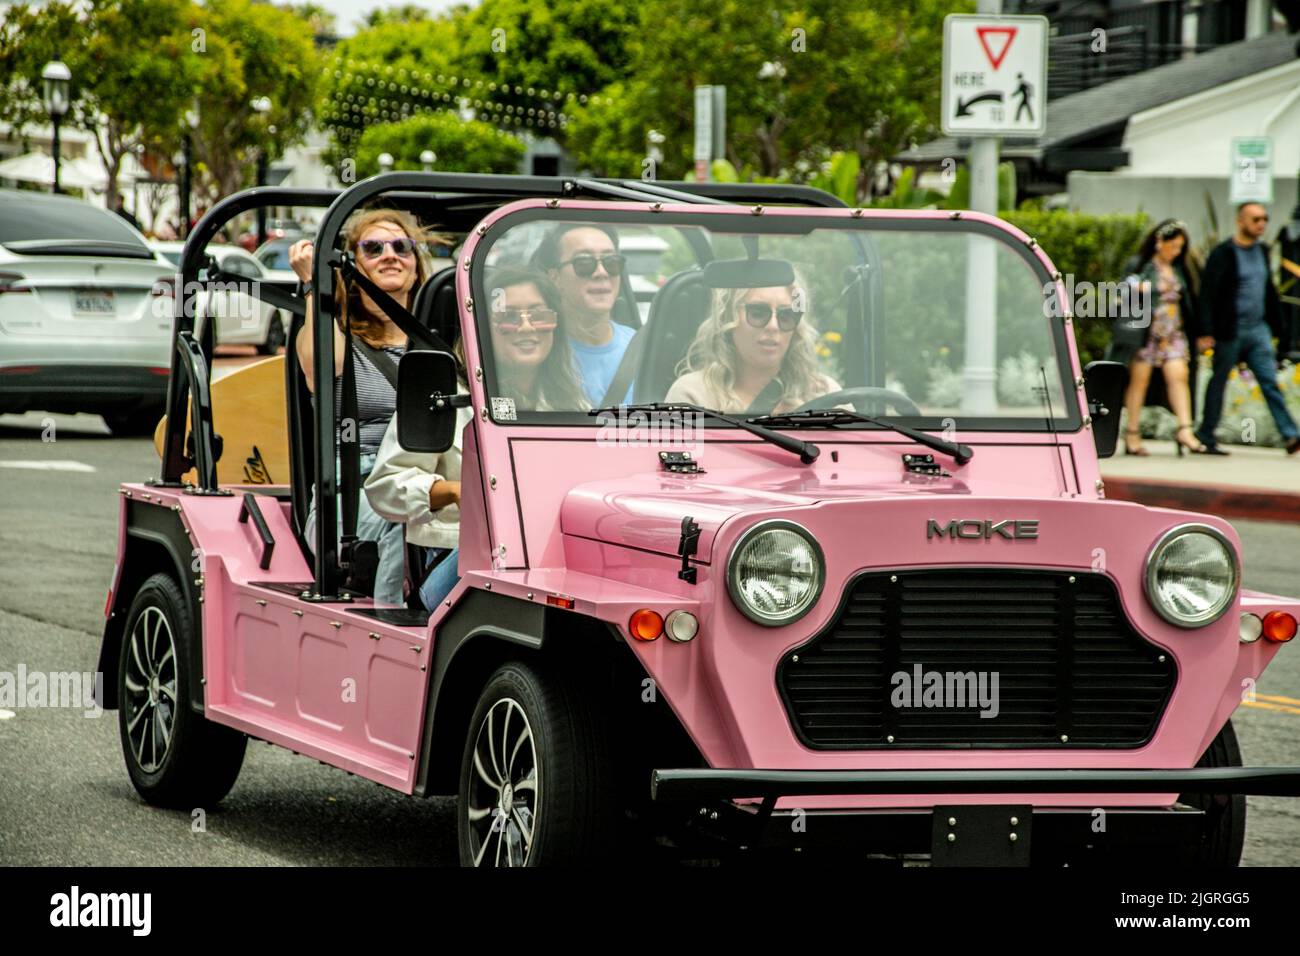 Une procession de voitures électriques miniatures Moke colorées tour Lido Marina Village sur Newport Beach, CA's Balboa Peninsular. Banque D'Images